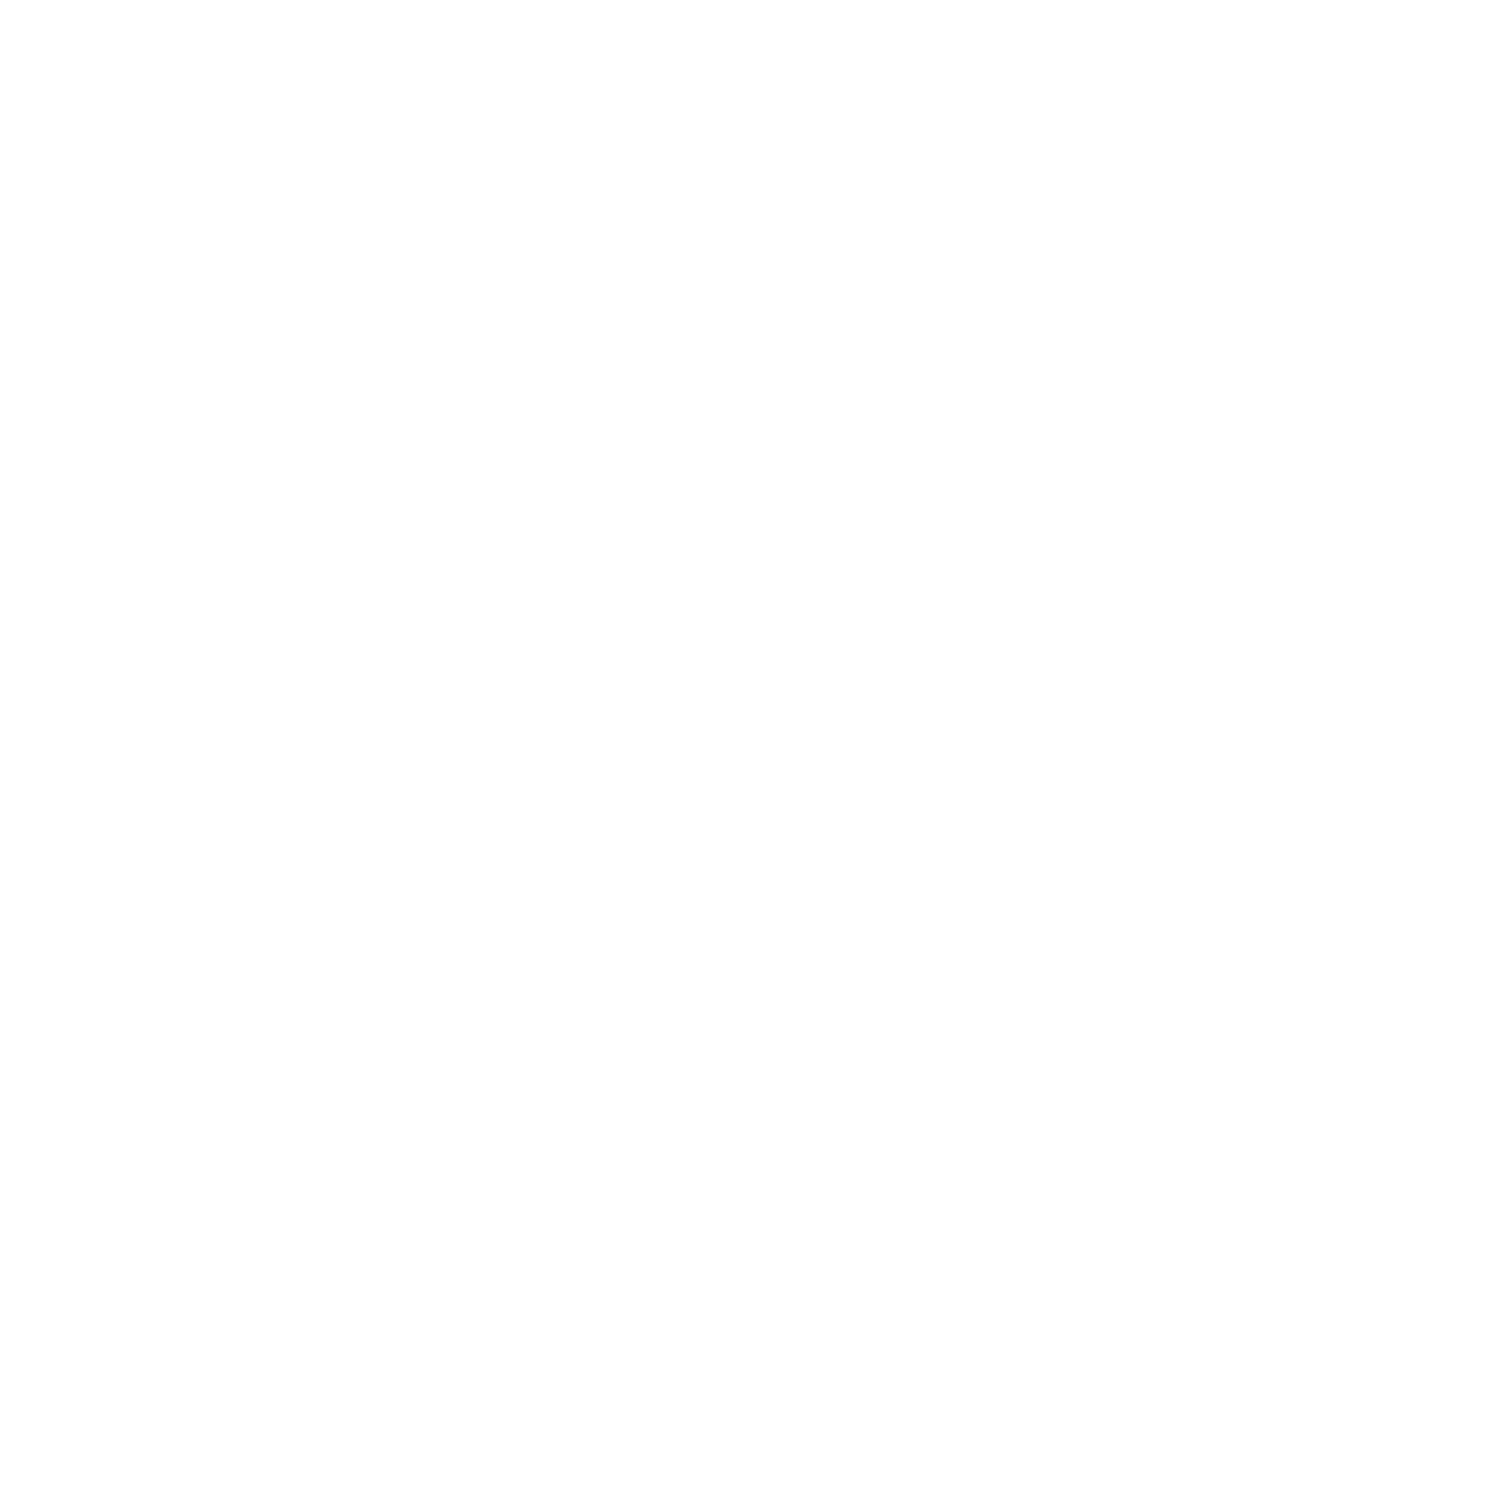 kliggs photos